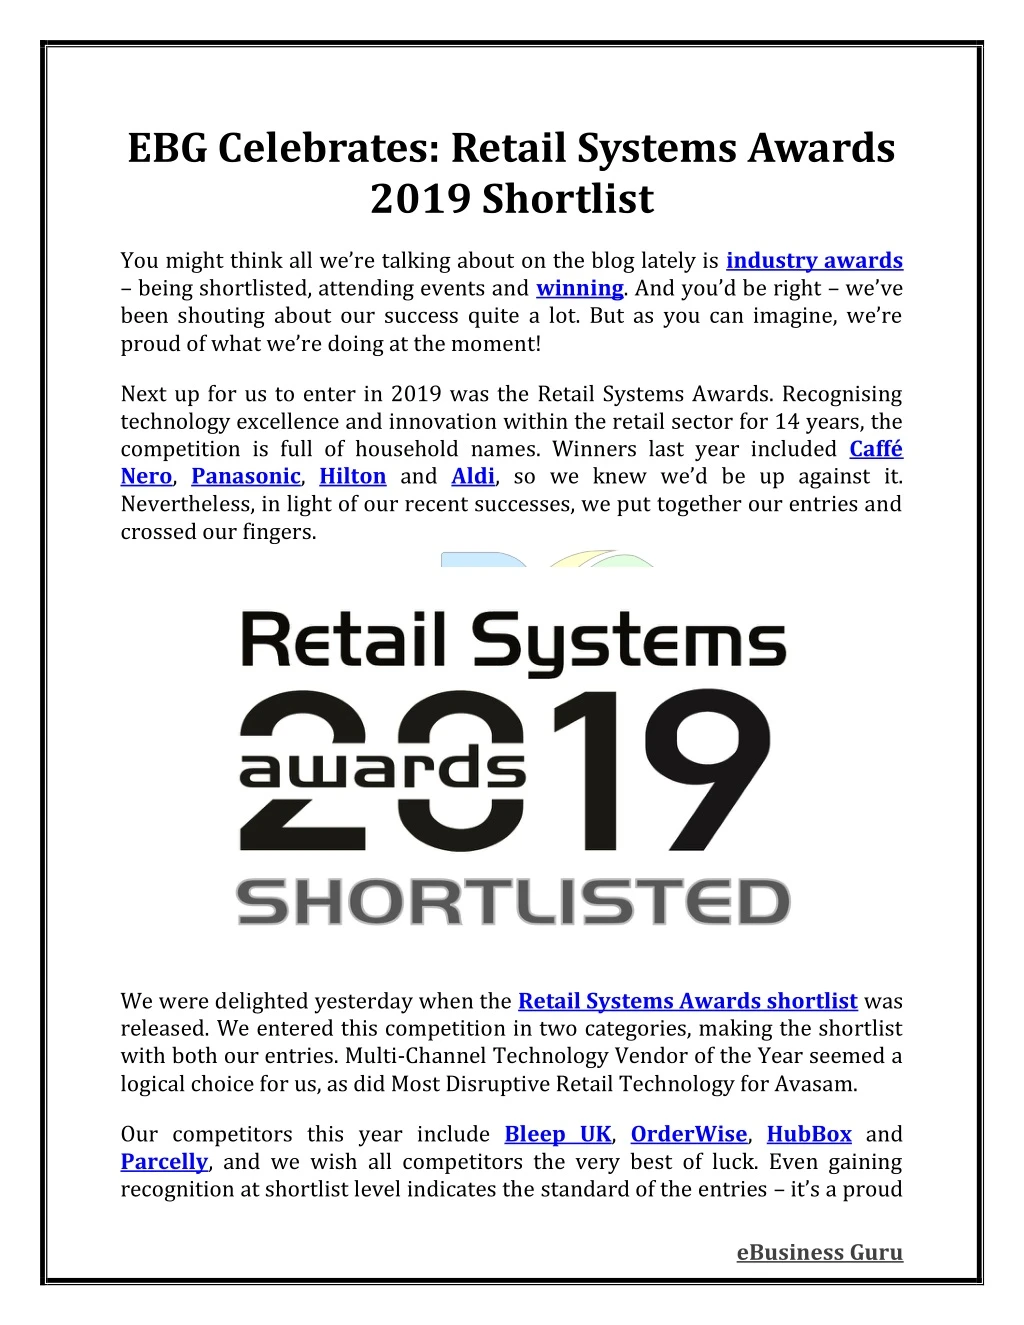 ebg celebrates retail systems awards 2019